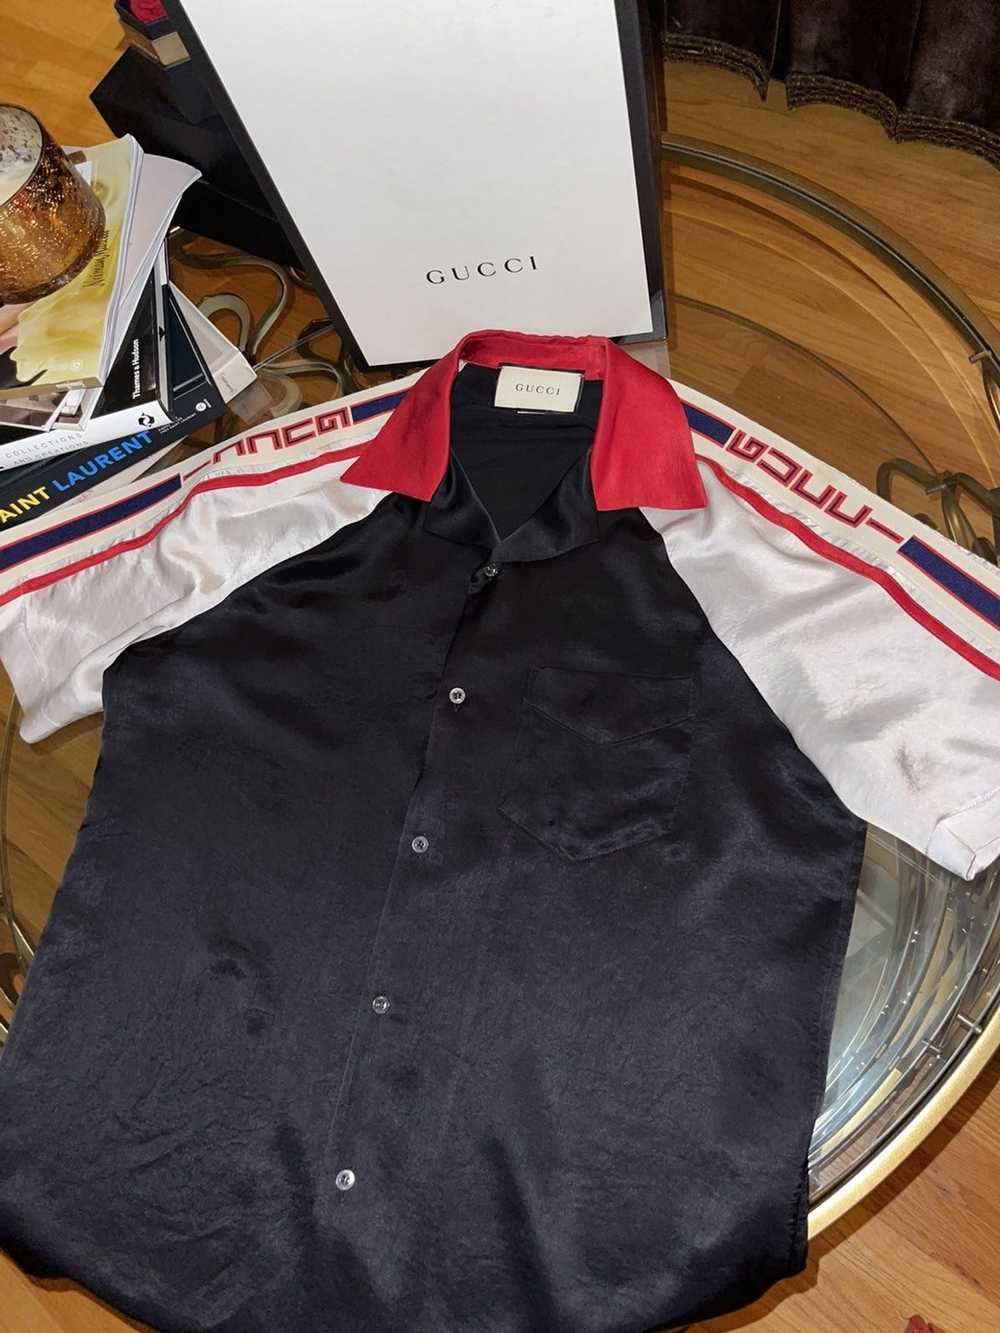 Gucci Gucci Ace-Tate Bowling Shirt (silk) - image 1